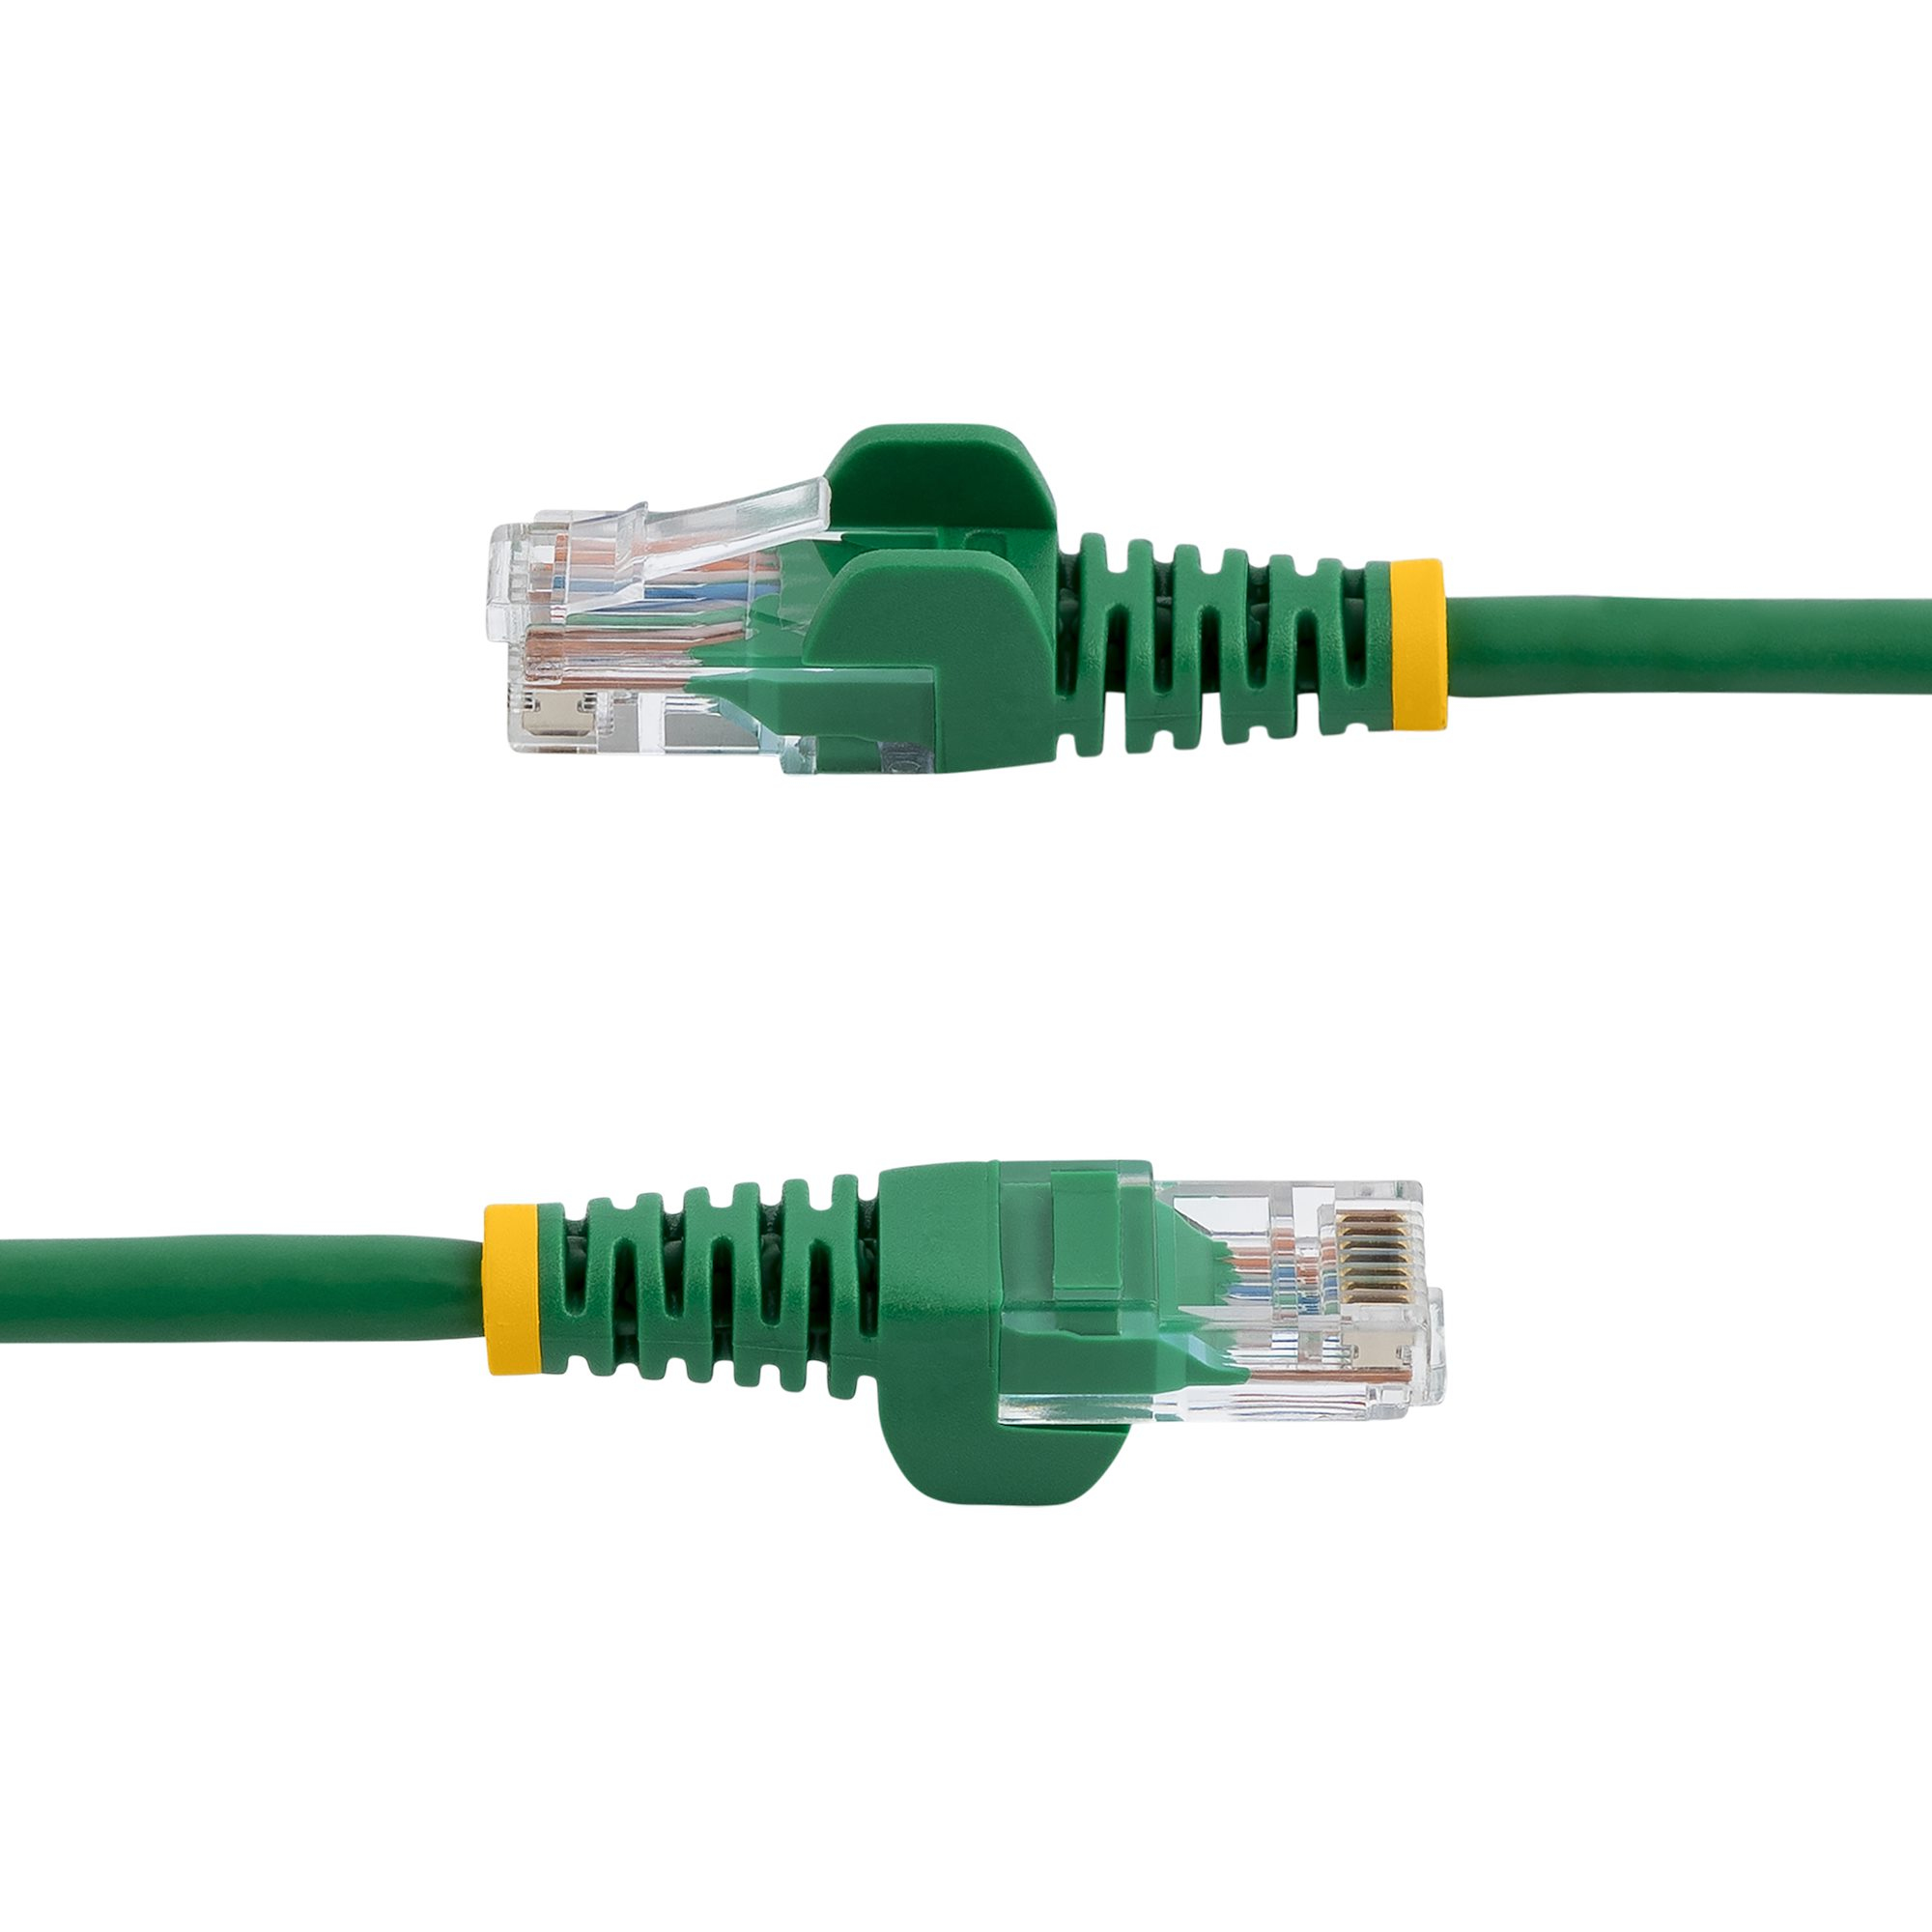 StarTech.com 0,5m Cat5e Ethernet Netzwerkkabel Snagless mit RJ45 - Cat 5e UTP Kabel - Grün - Patch-Kabel - RJ-45 (M)